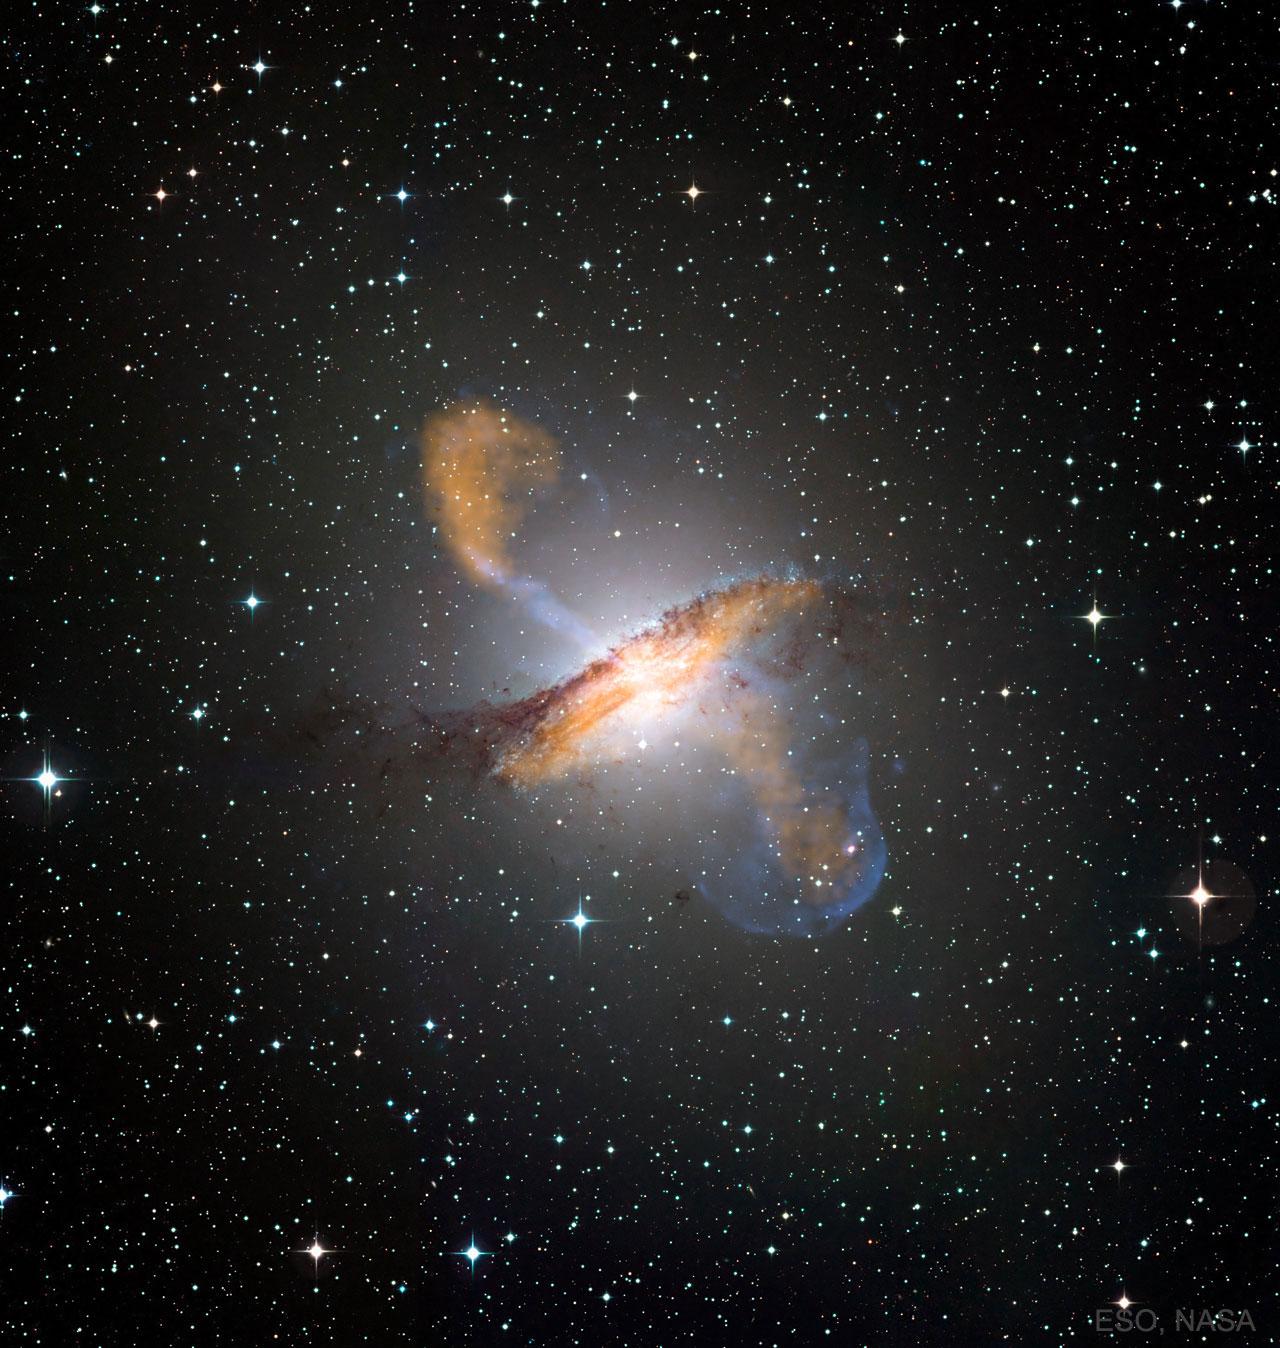 صورة لمجرة قنطورس أ الحلزونية تظهر فيها تدفّقات الپلازما المتدفقة التي يبلغ طولها أكثر من مليون سنة ضوئية. تمّ تِبيان ضوء الأشعة السينية في الصورة المركبة المميزة باللون الأزرق، بينما ضوء الموجات الصُغريّة/الميكرويّة (الميكروويڤ) ملوّن باللون البرتقالي.